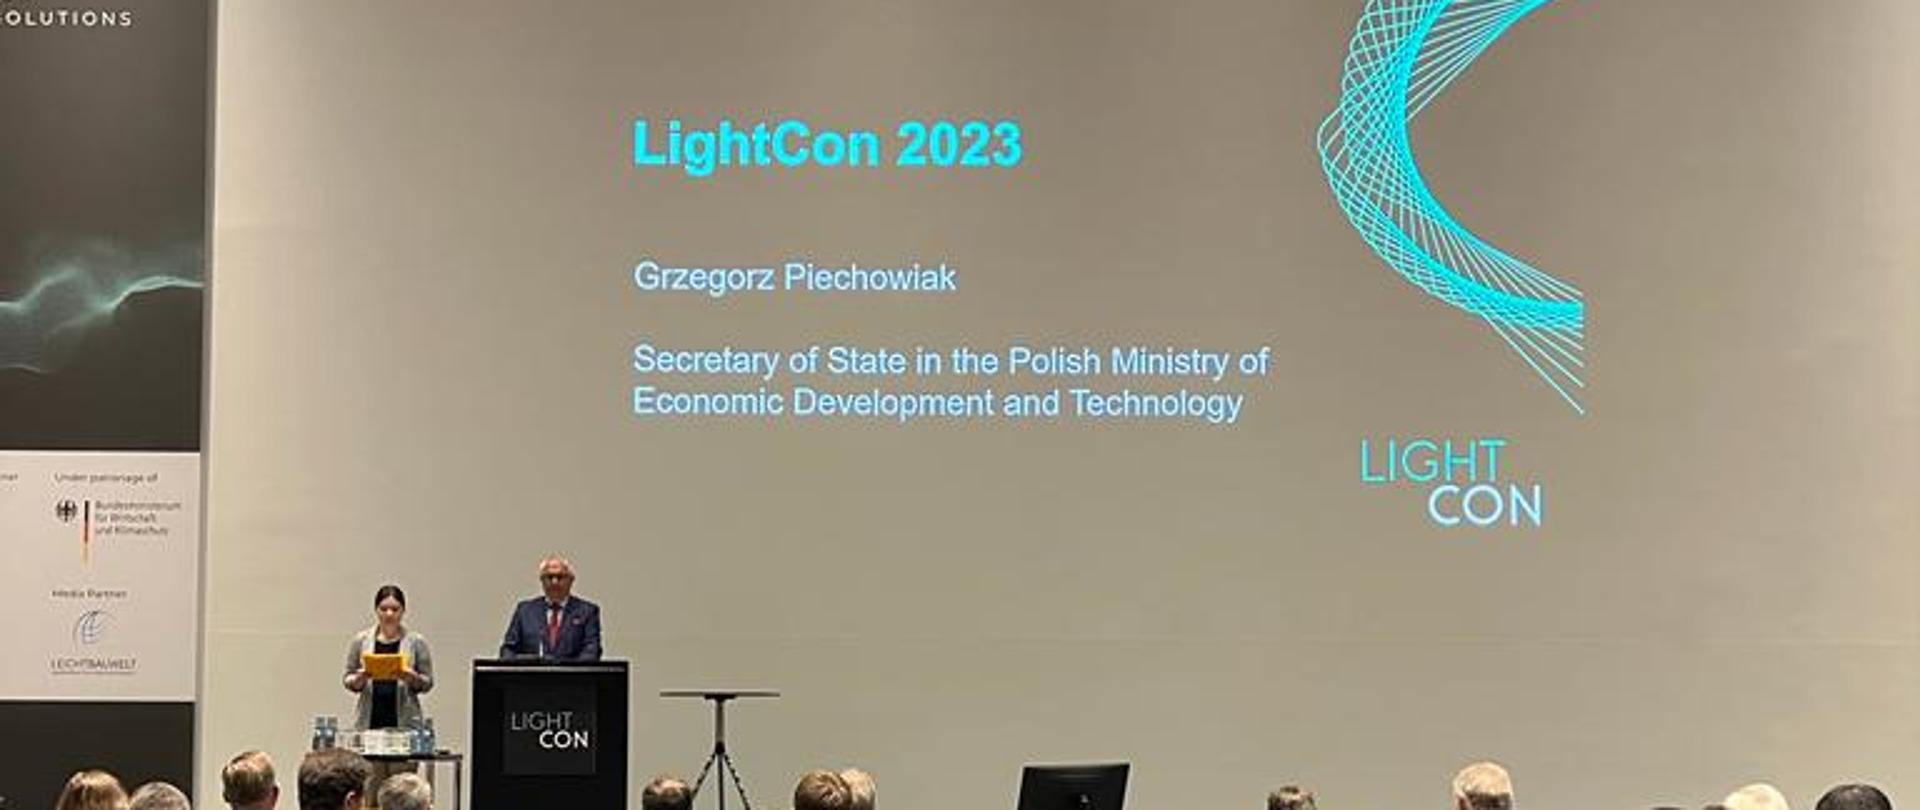 Wiceminister Grzegorz Piechowiak przemawia na targach LightCon 2023.